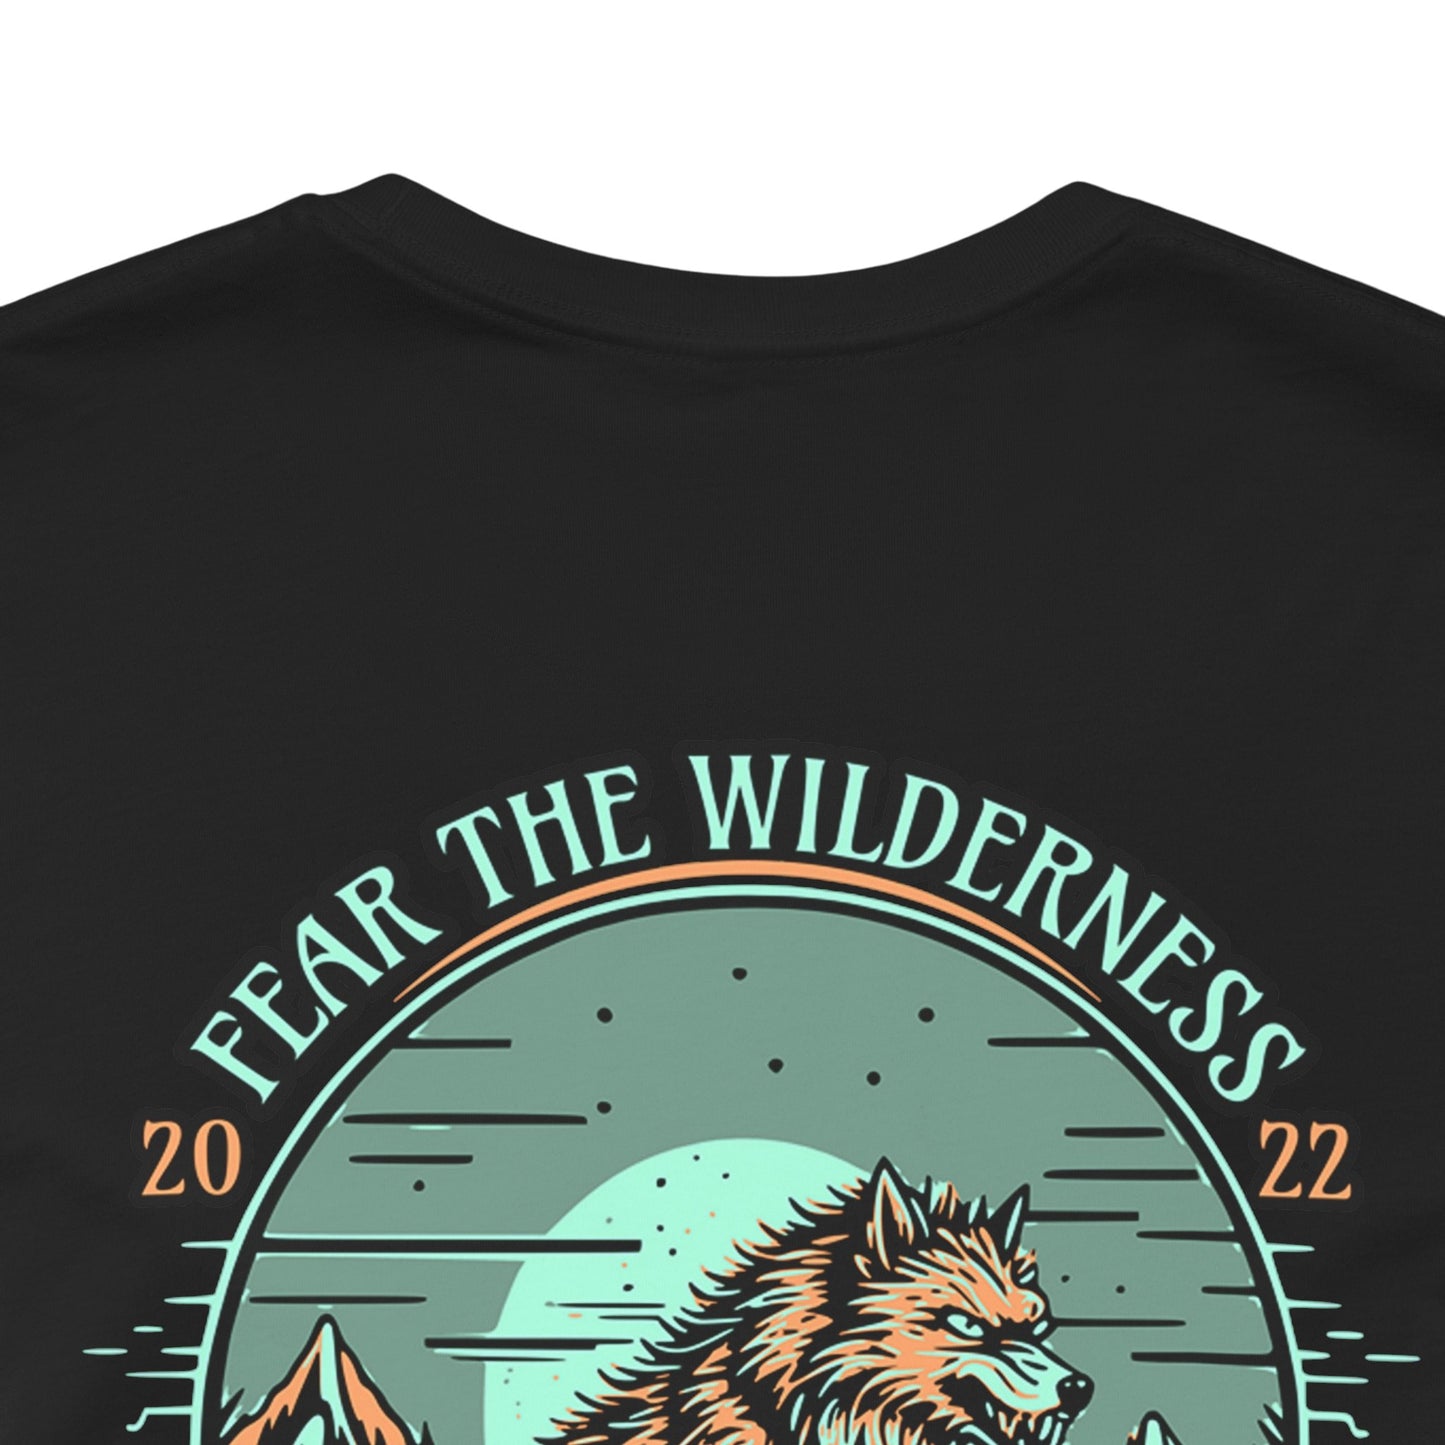 Fear the Wilderness - T-Shirt